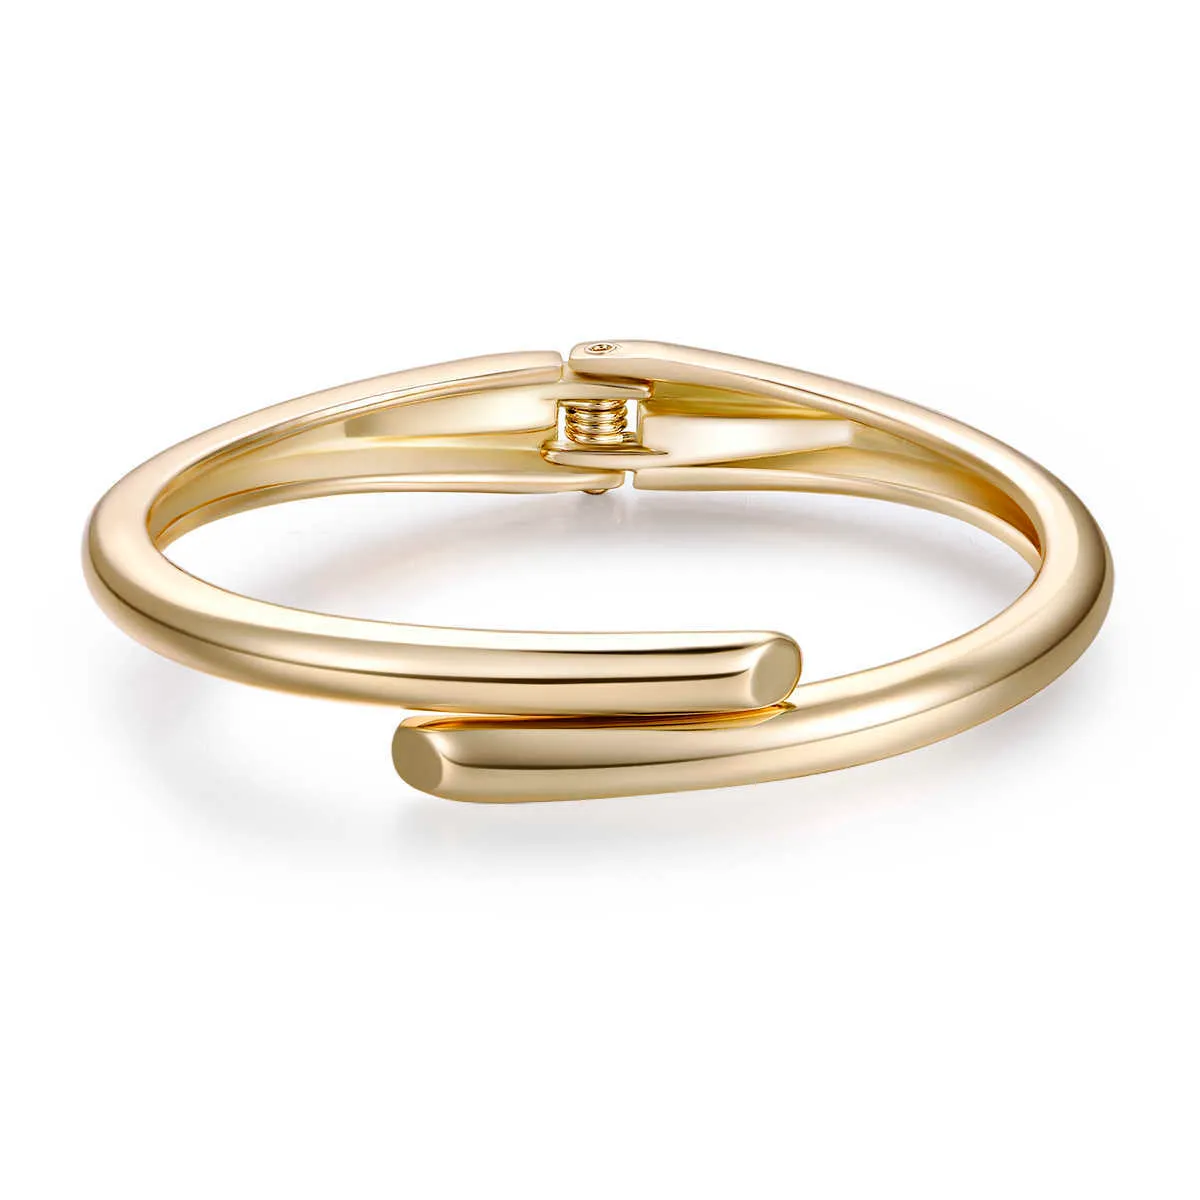 Moda ovale lucido placcato oro fascino dichiarazione braccialetto polsino chiodo braccialetto le donne ragazze trendy amore braccialetto braccialetto gioielli Q0717